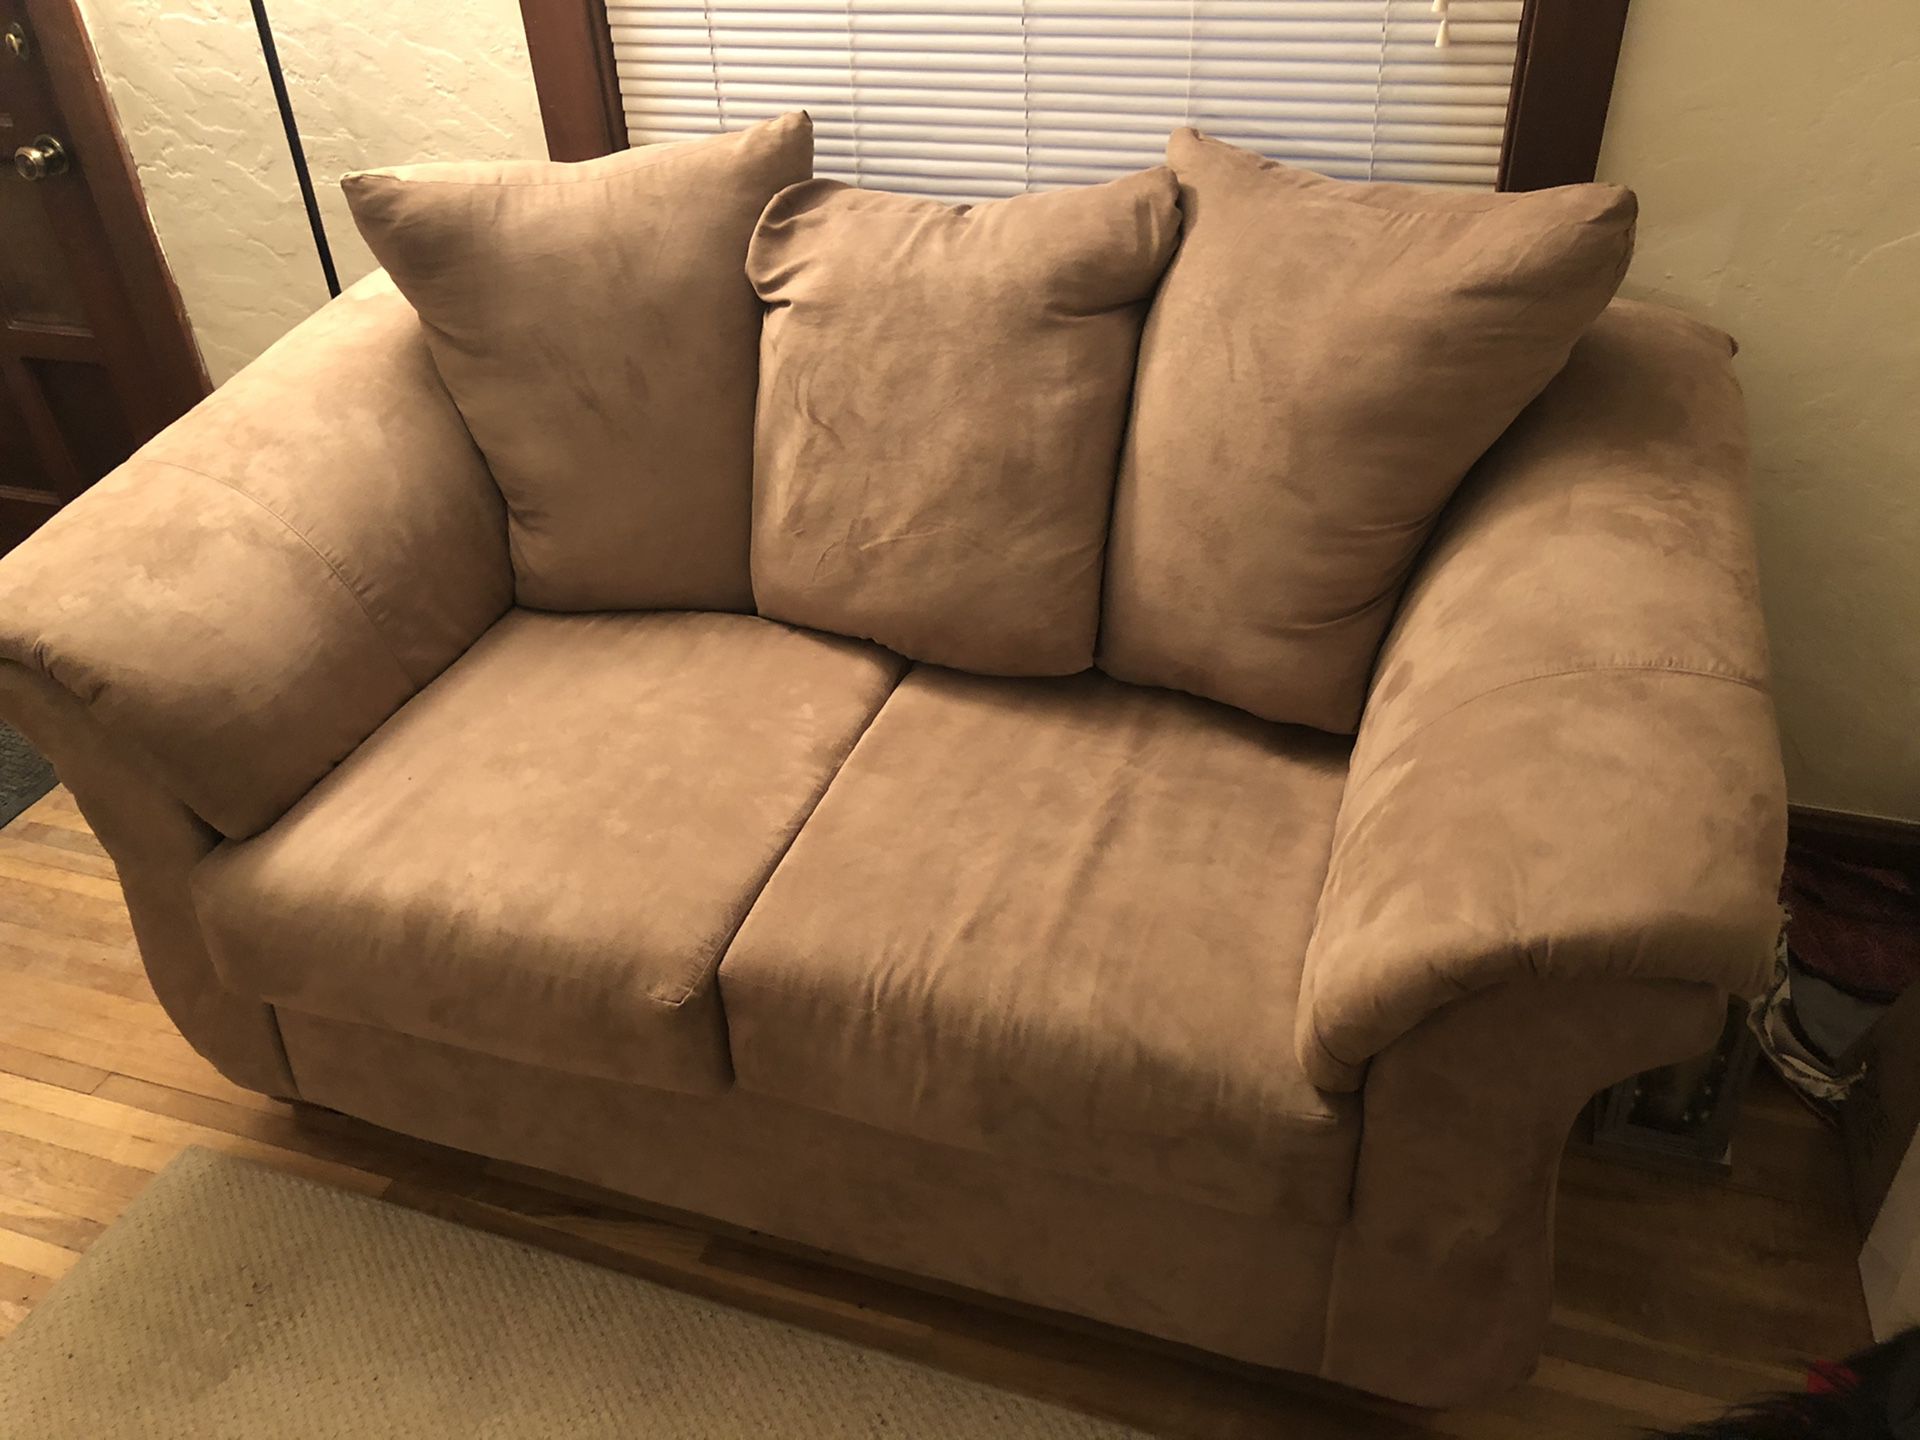 Sofa, chair and ottoman